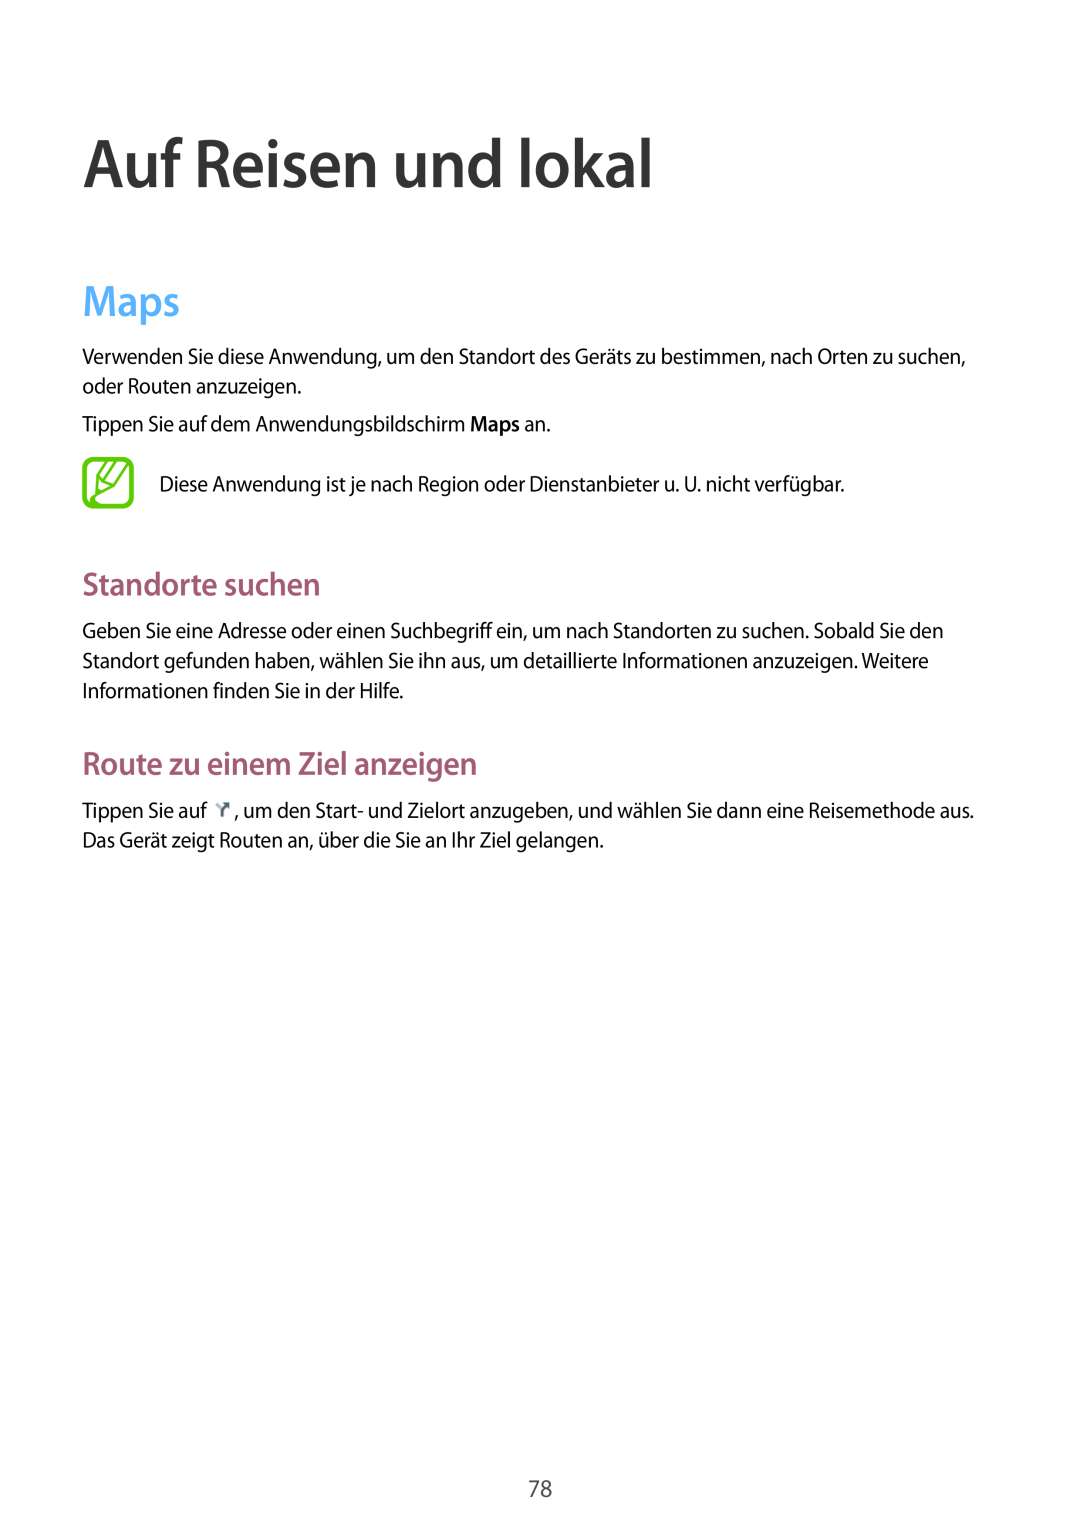 Samsung SM-T110NYKAEUR, SM-T110NYKATPH manual Auf Reisen und lokal, Maps, Standorte suchen, Route zu einem Ziel anzeigen 